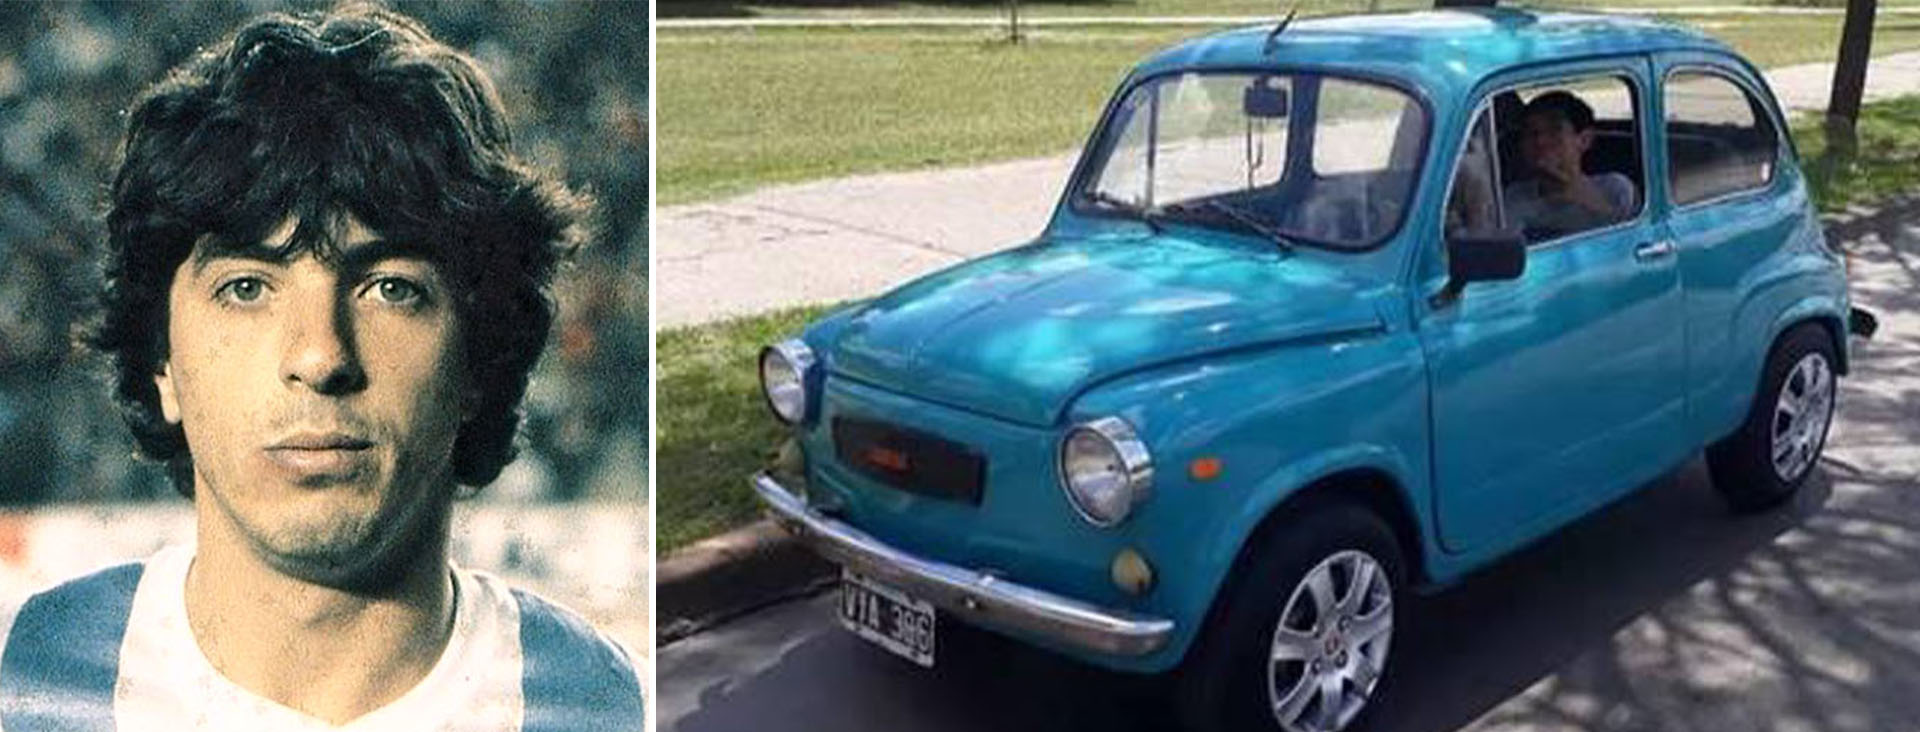 El primer auto de José Antonio "Pepe" Castro se lo compró su padre: un Fiat 600. Aunque el preferido de los futbolistas era el Torino y un escalón más abajo el Peugeot 504.